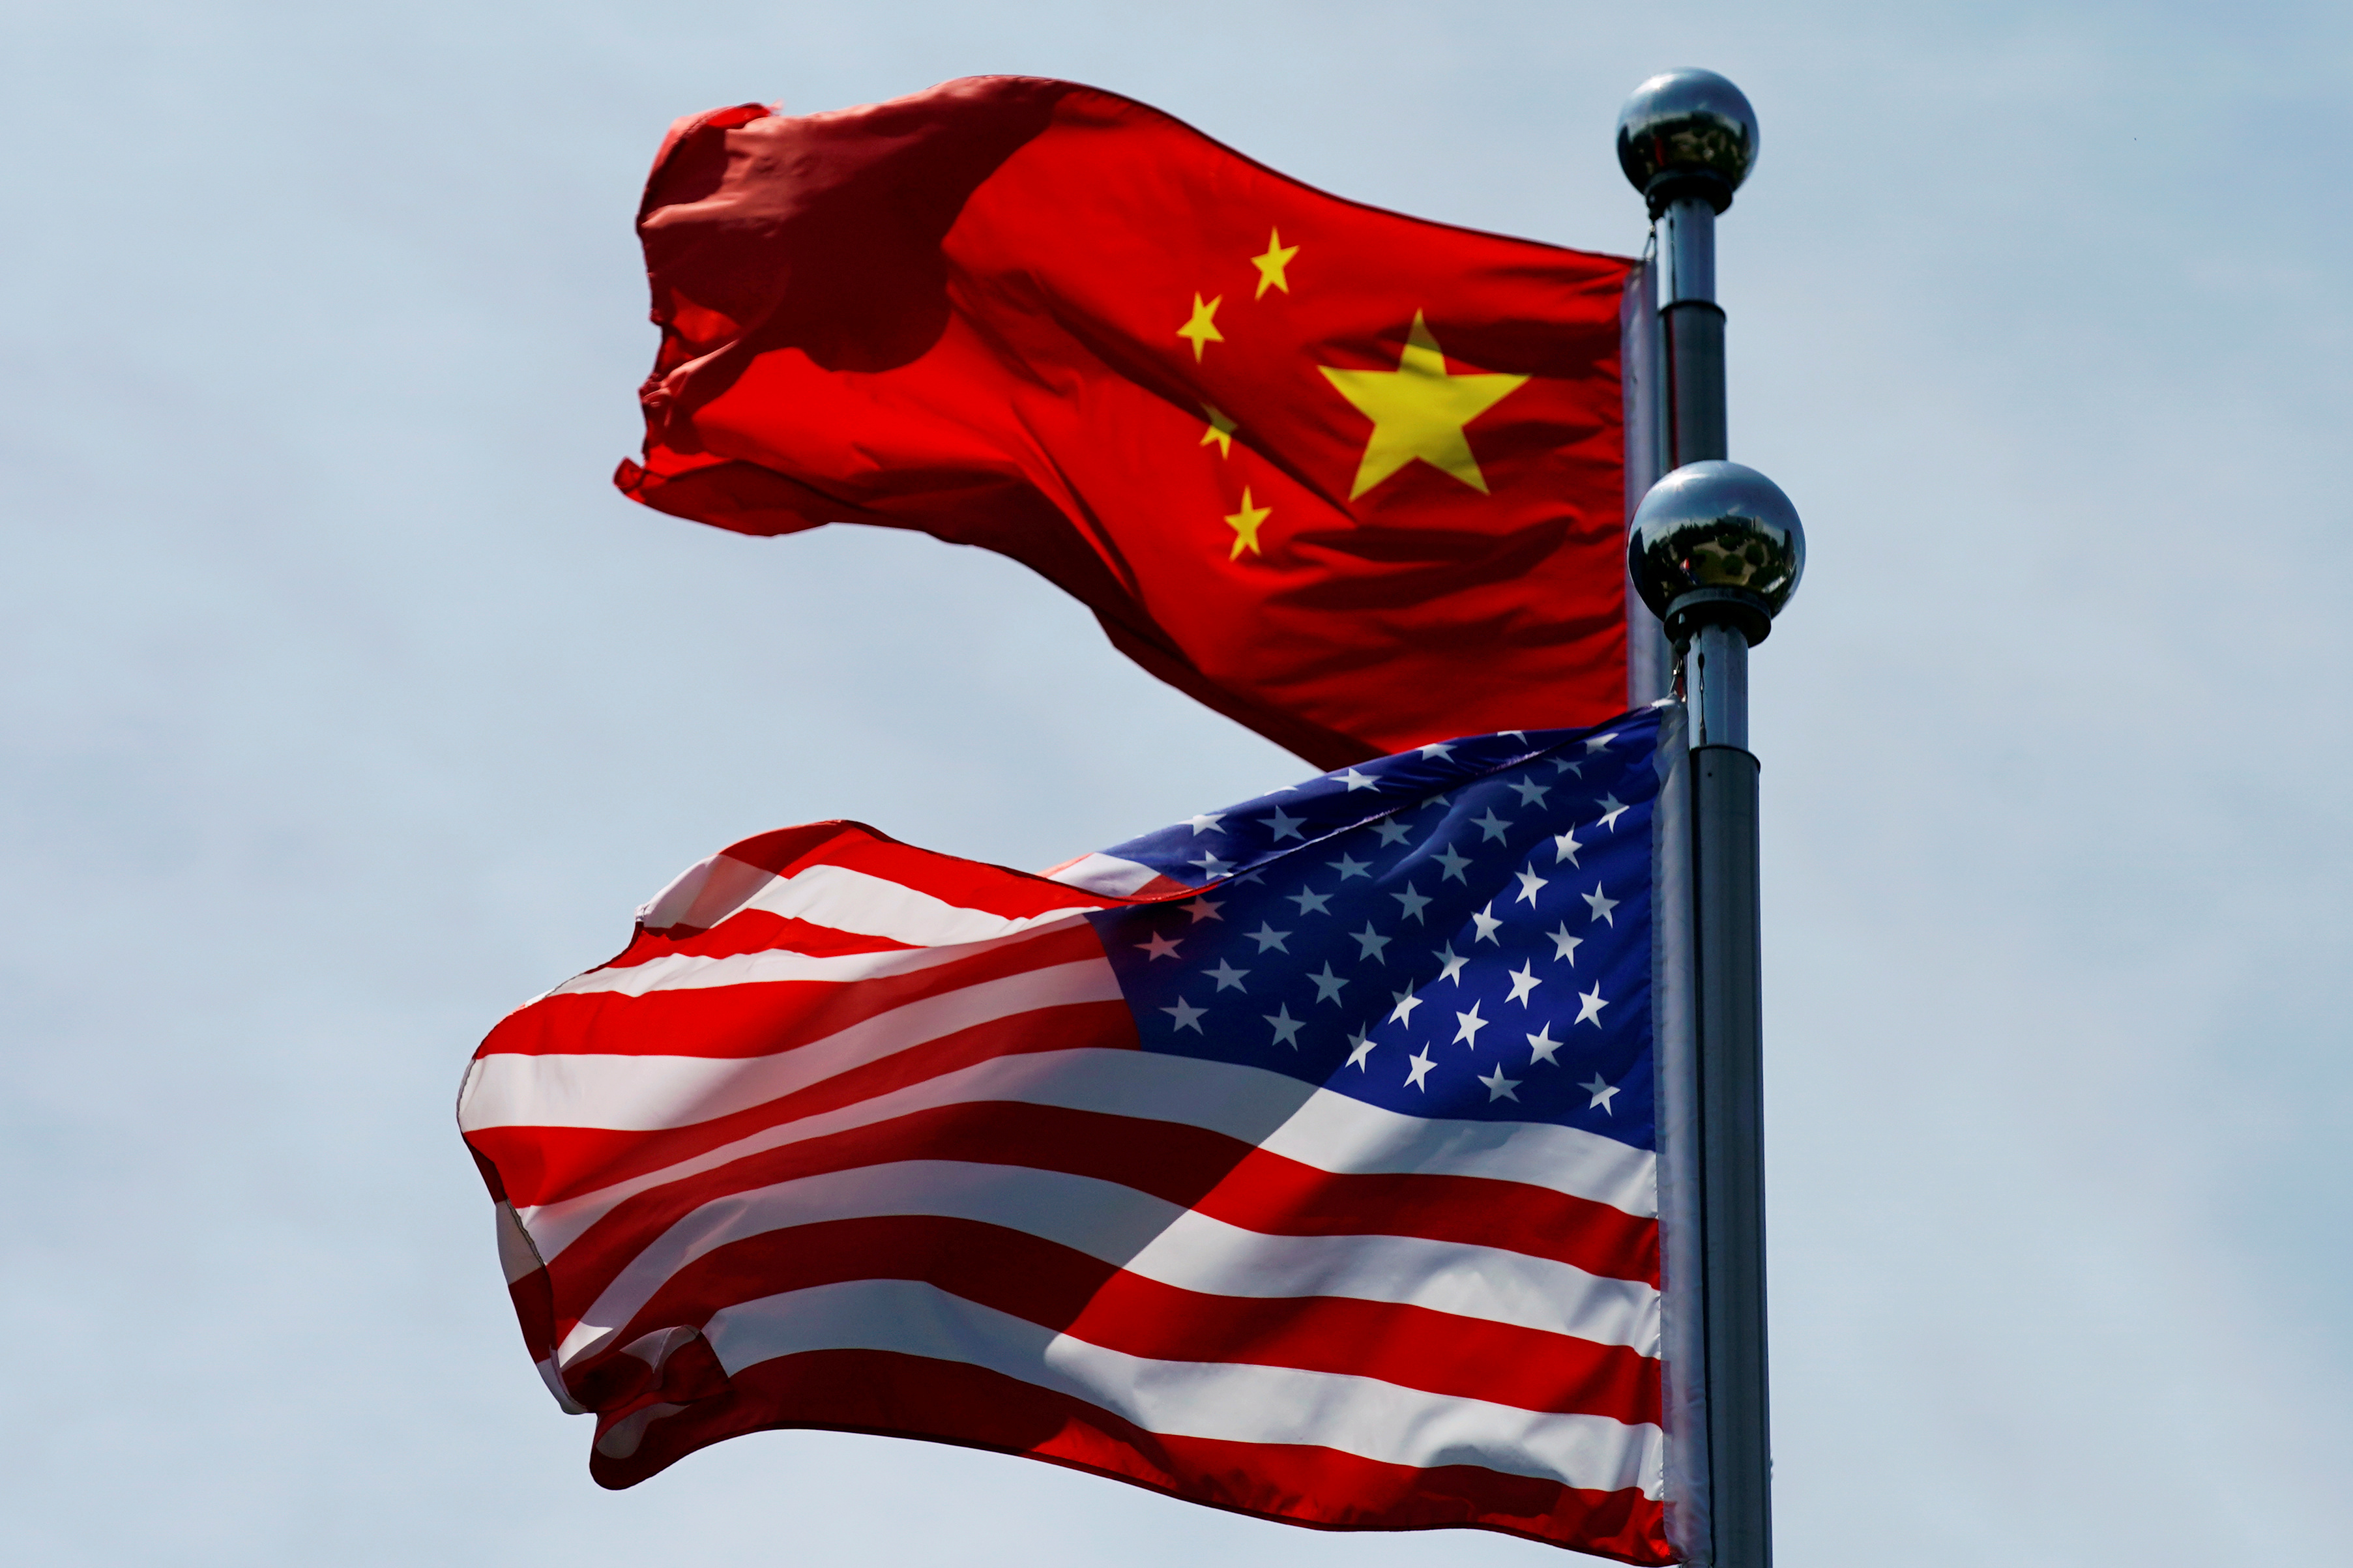 EEUU suspende programas de intercambio cultural con China tachándolos de “propaganda”